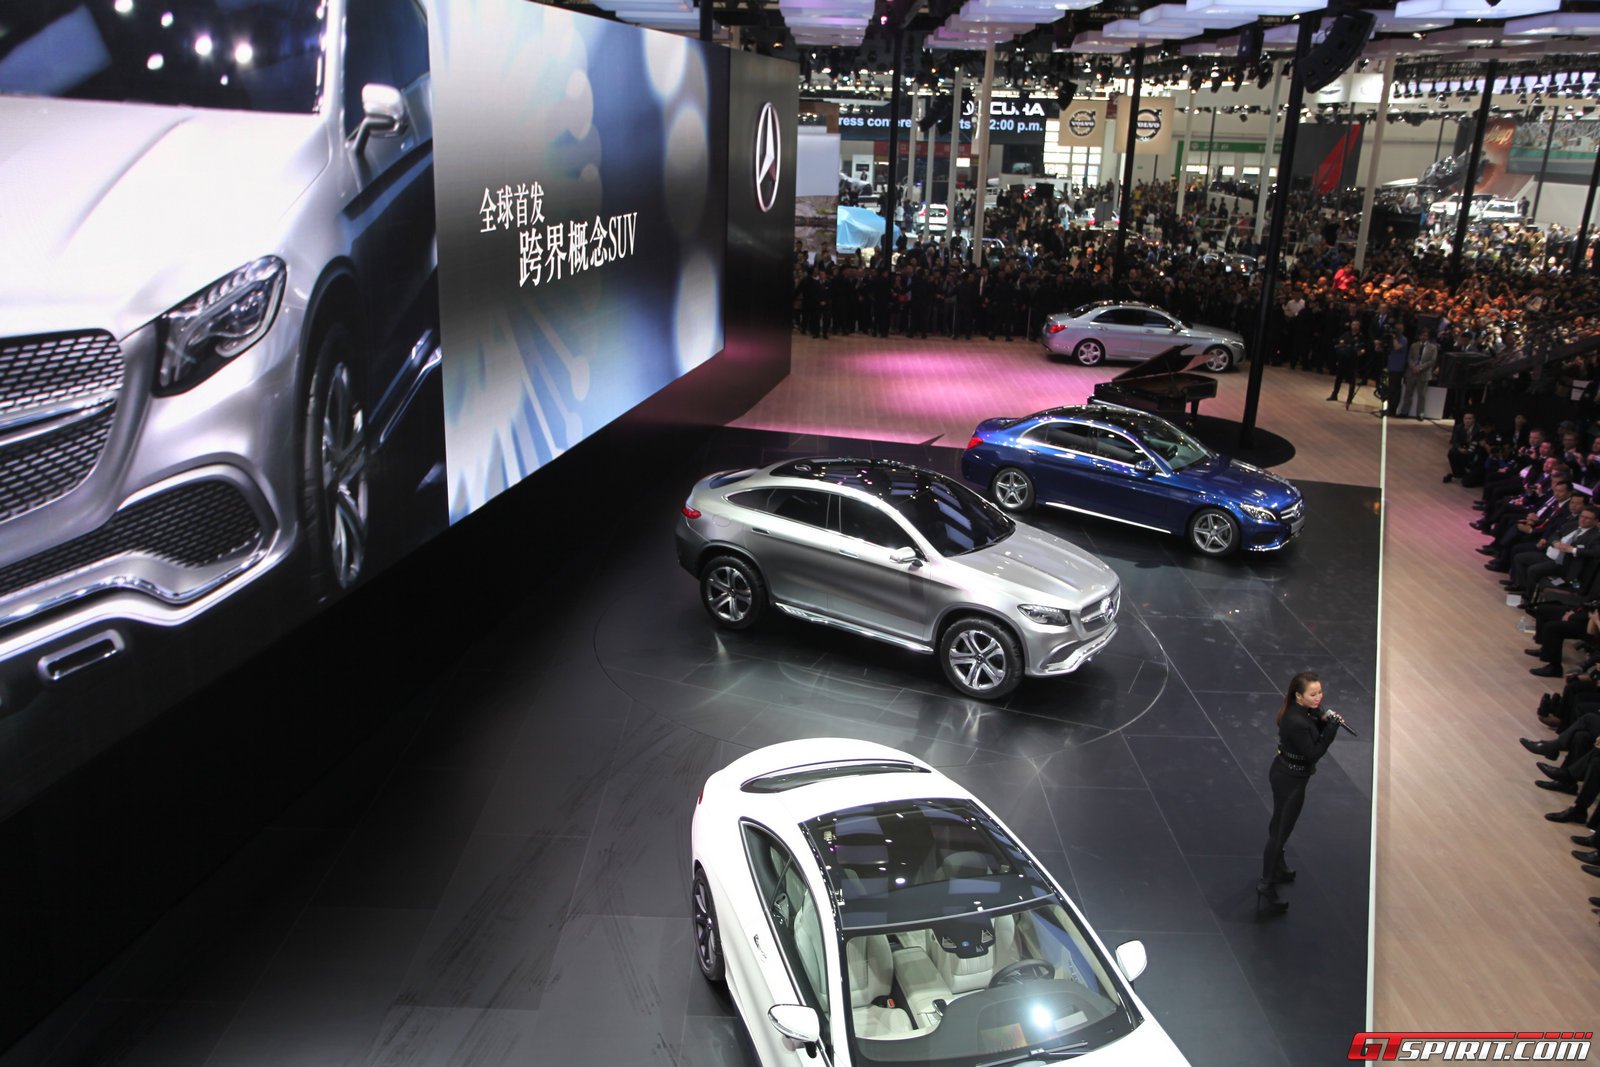 Mercedes-Benz Considers Separate SUV Line - BenzInsider.com - A